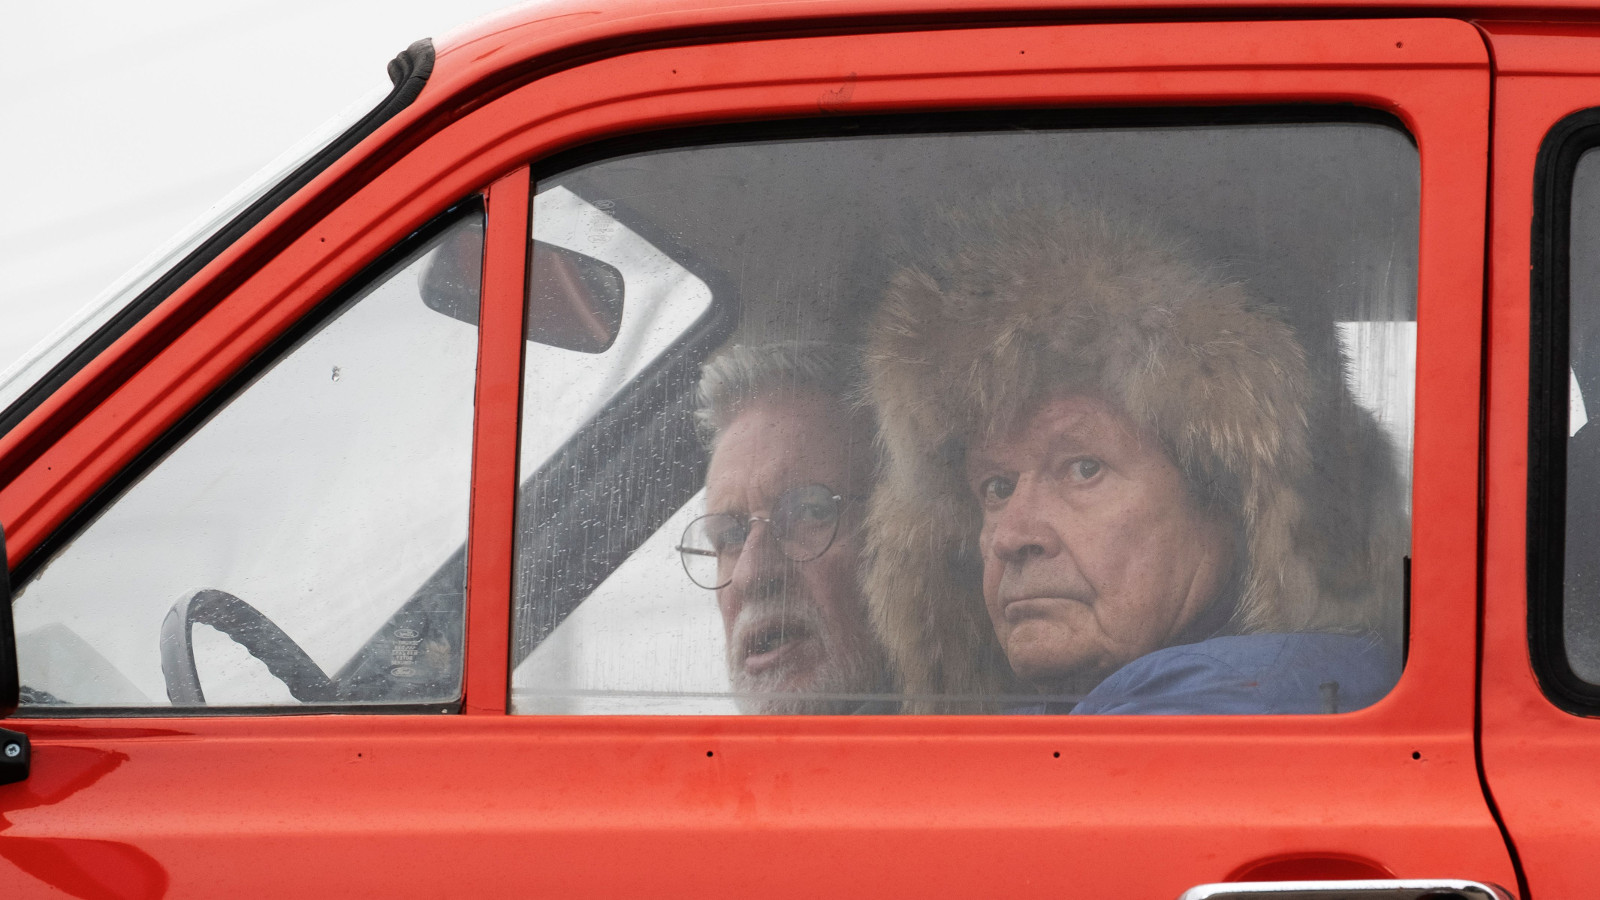 Kuvassa on punaisen Escortin ikkuna, josta näkyy Heikki Kinnusen pää karvahattu päässä.  Takana näkyy Kari Väänänen.